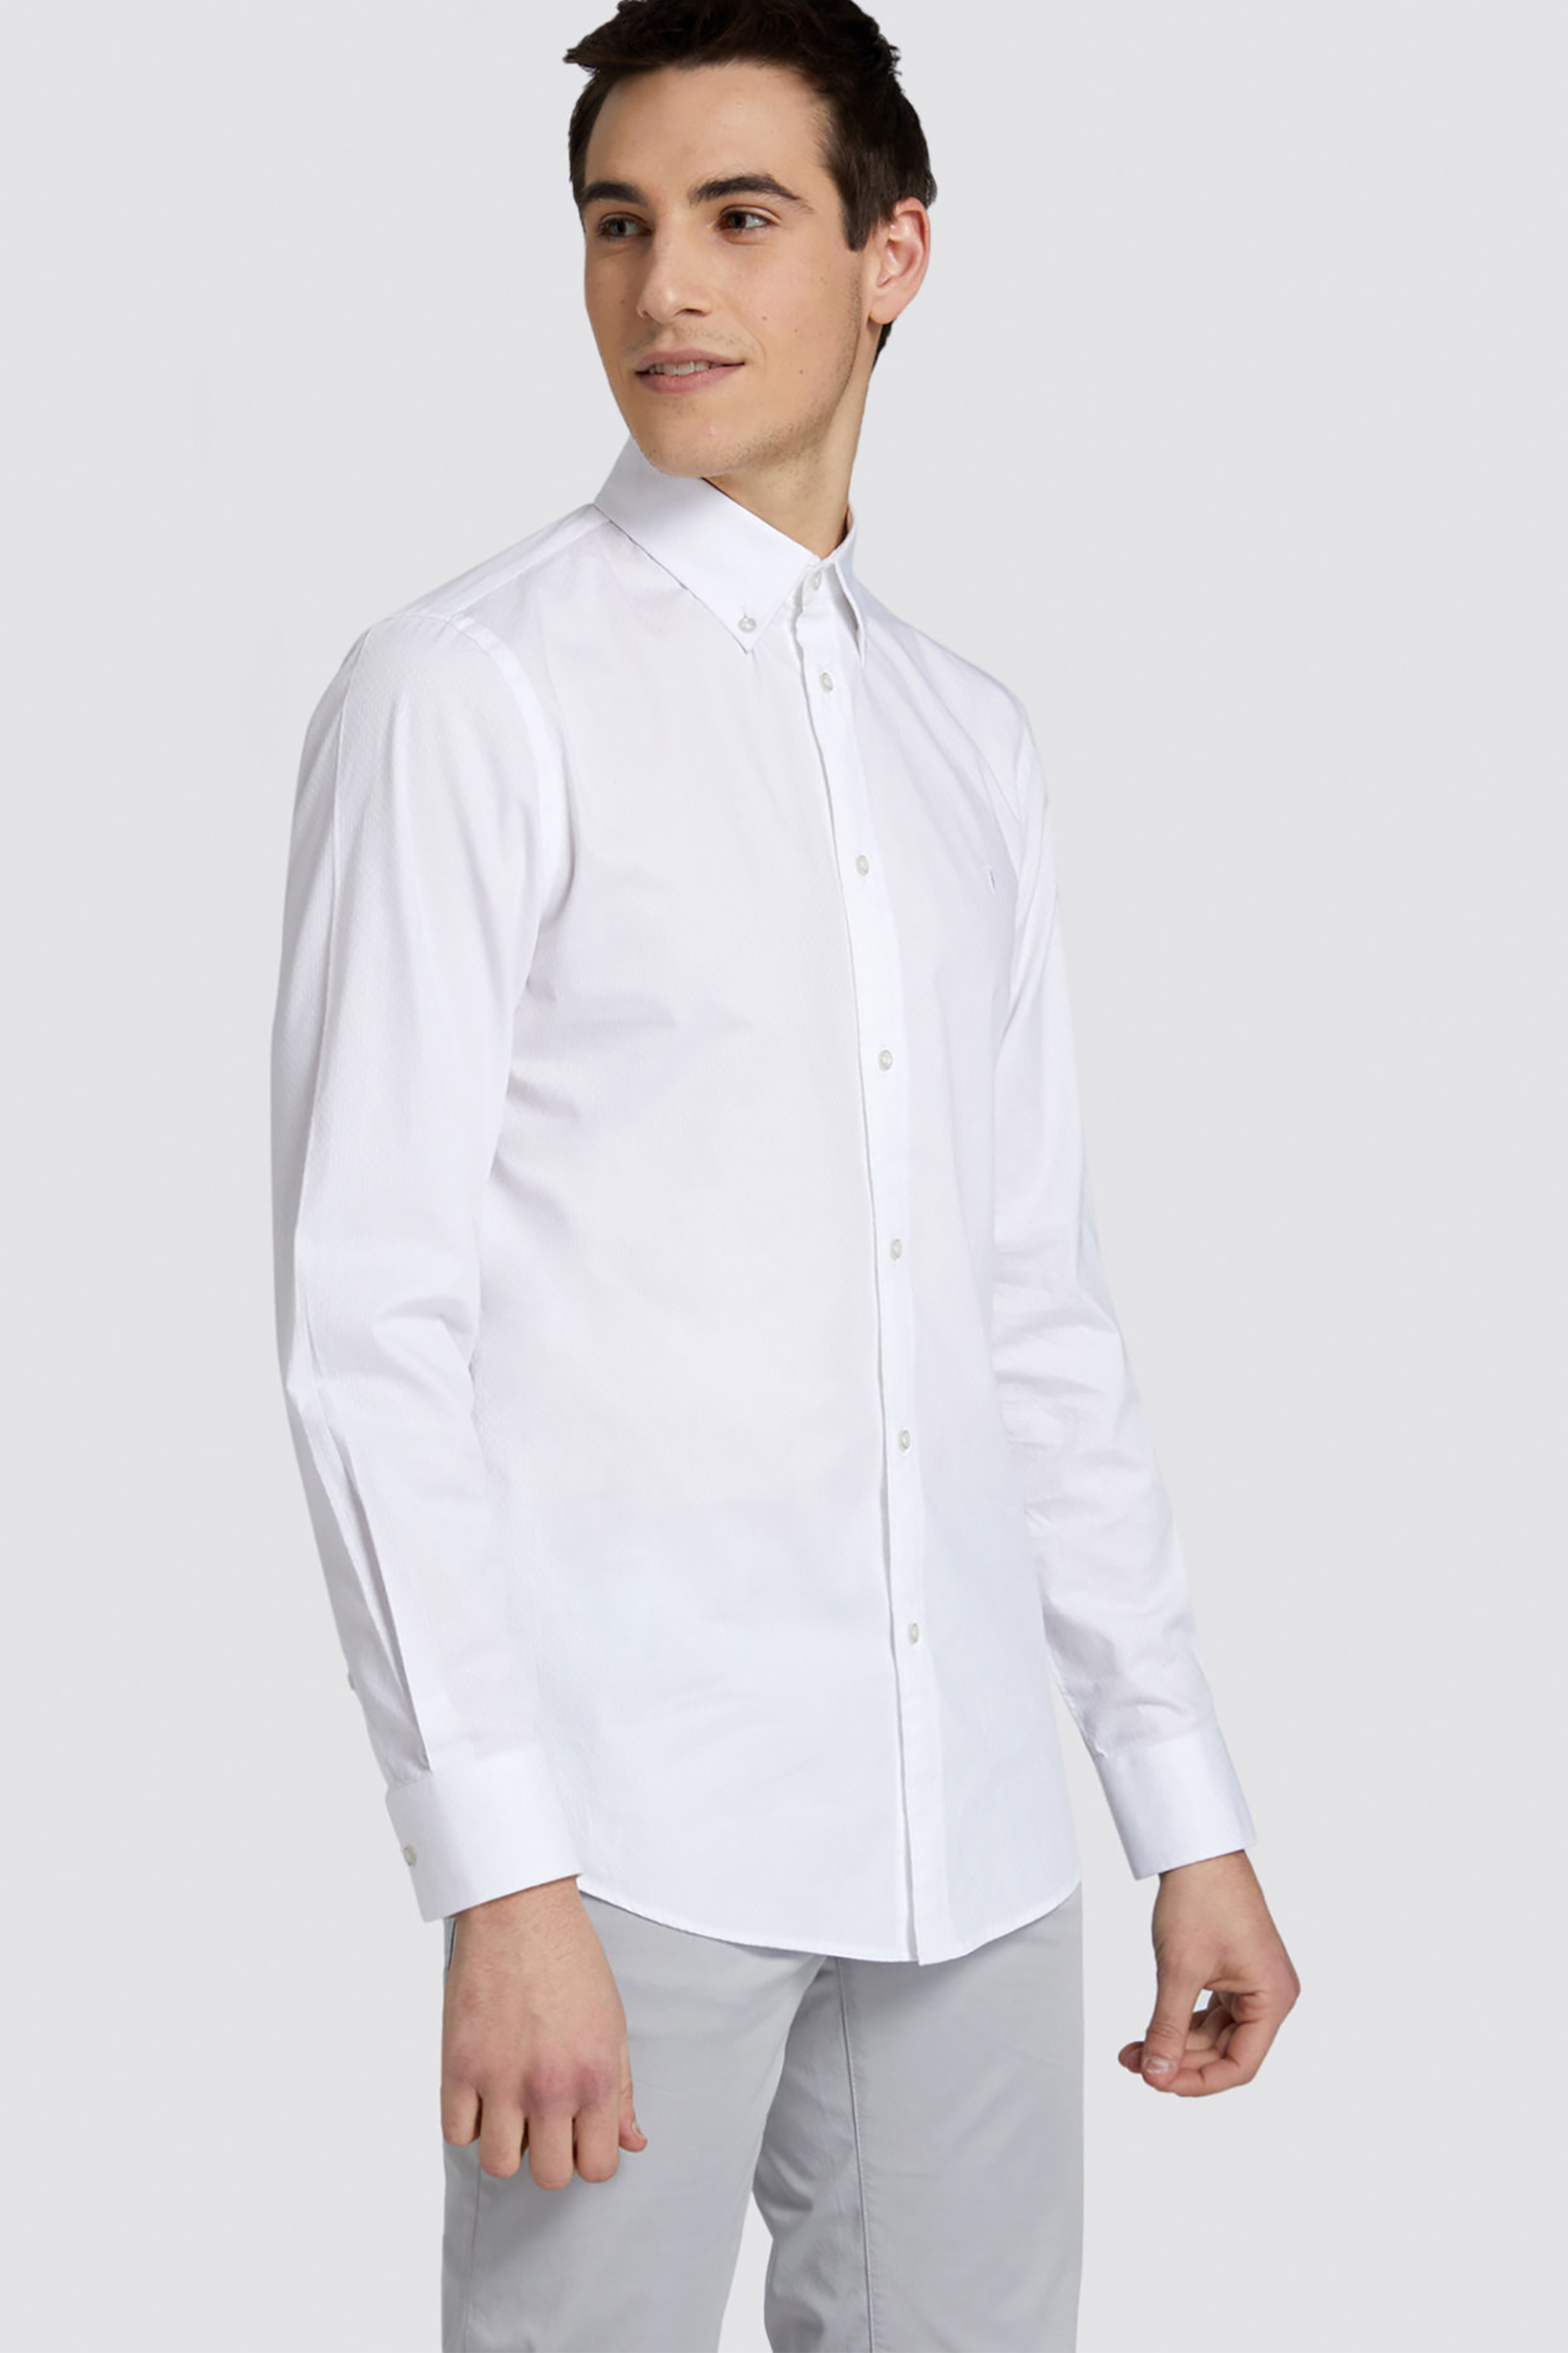 Άνδρας > ΡΟΥΧΑ > Πουκάμισα > Επίσημα & Βραδινά Trussardi Jeans ανδρικό πουκάμισο μονόχρωμο regular-fit - 52C00069-1T002243 Λευκό